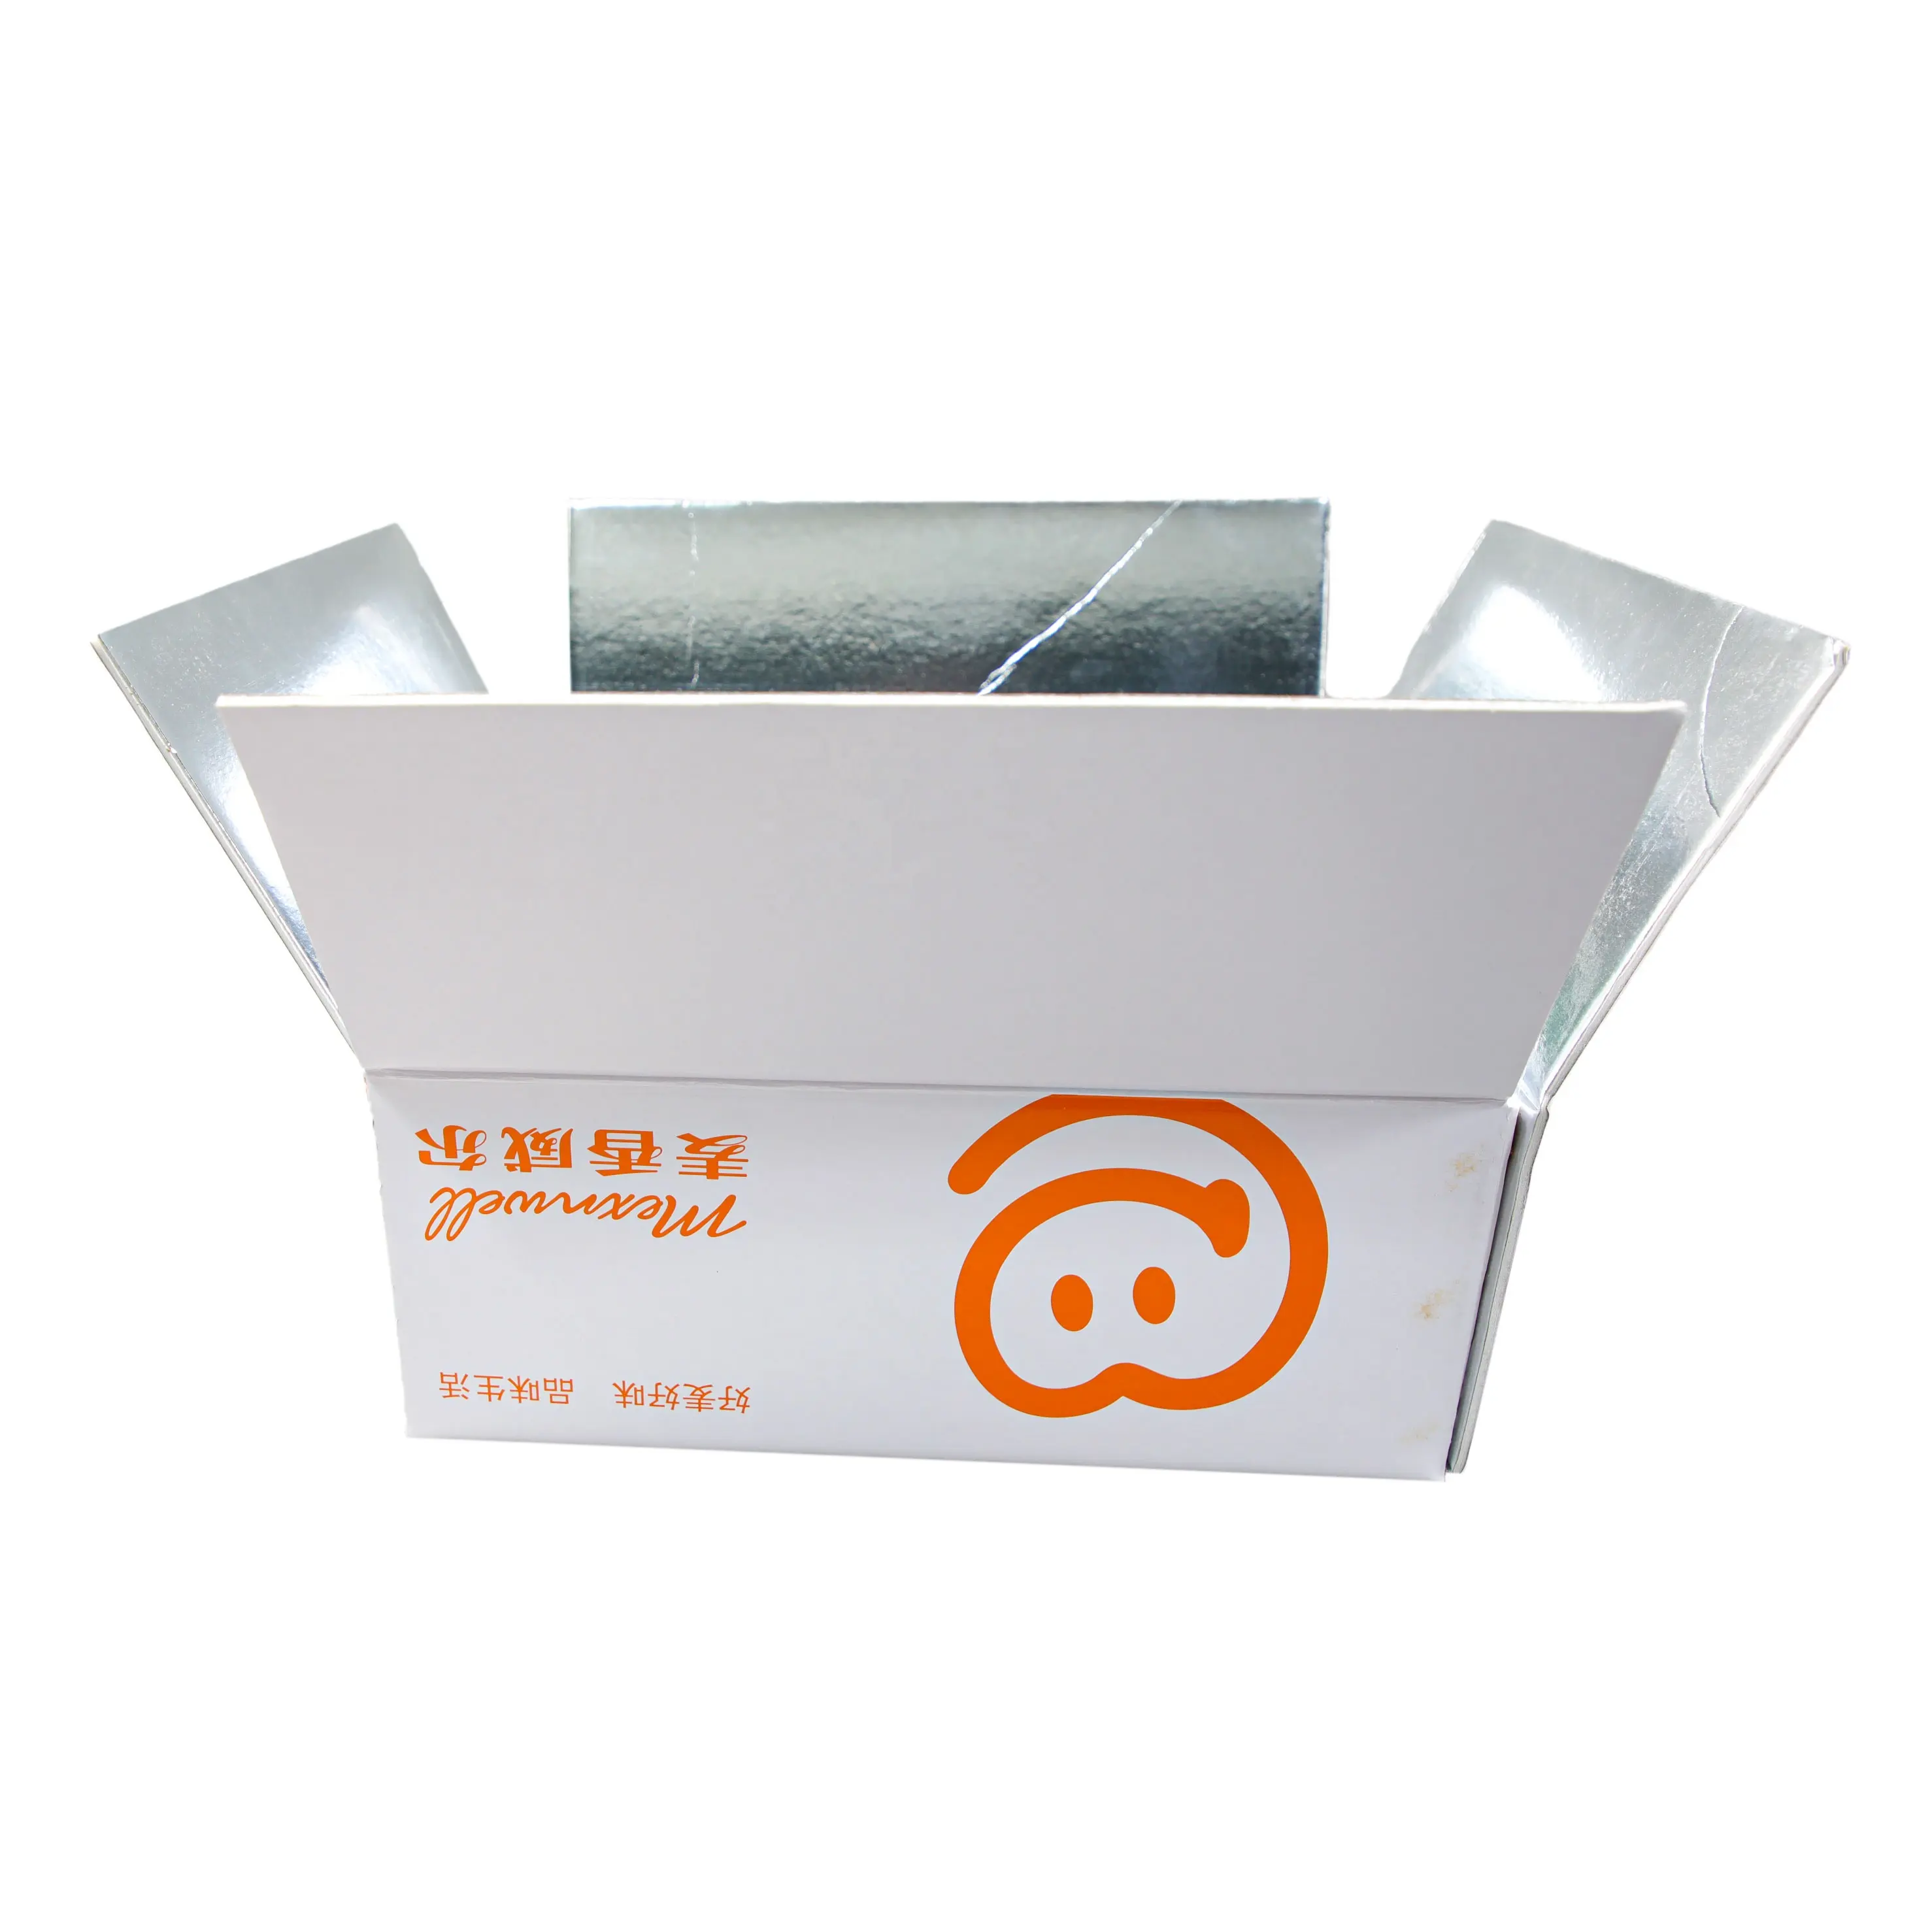 カートン食品包装食品断熱ボックス防水アルミフィルム断熱ボックス断熱包装冷凍冷蔵配送